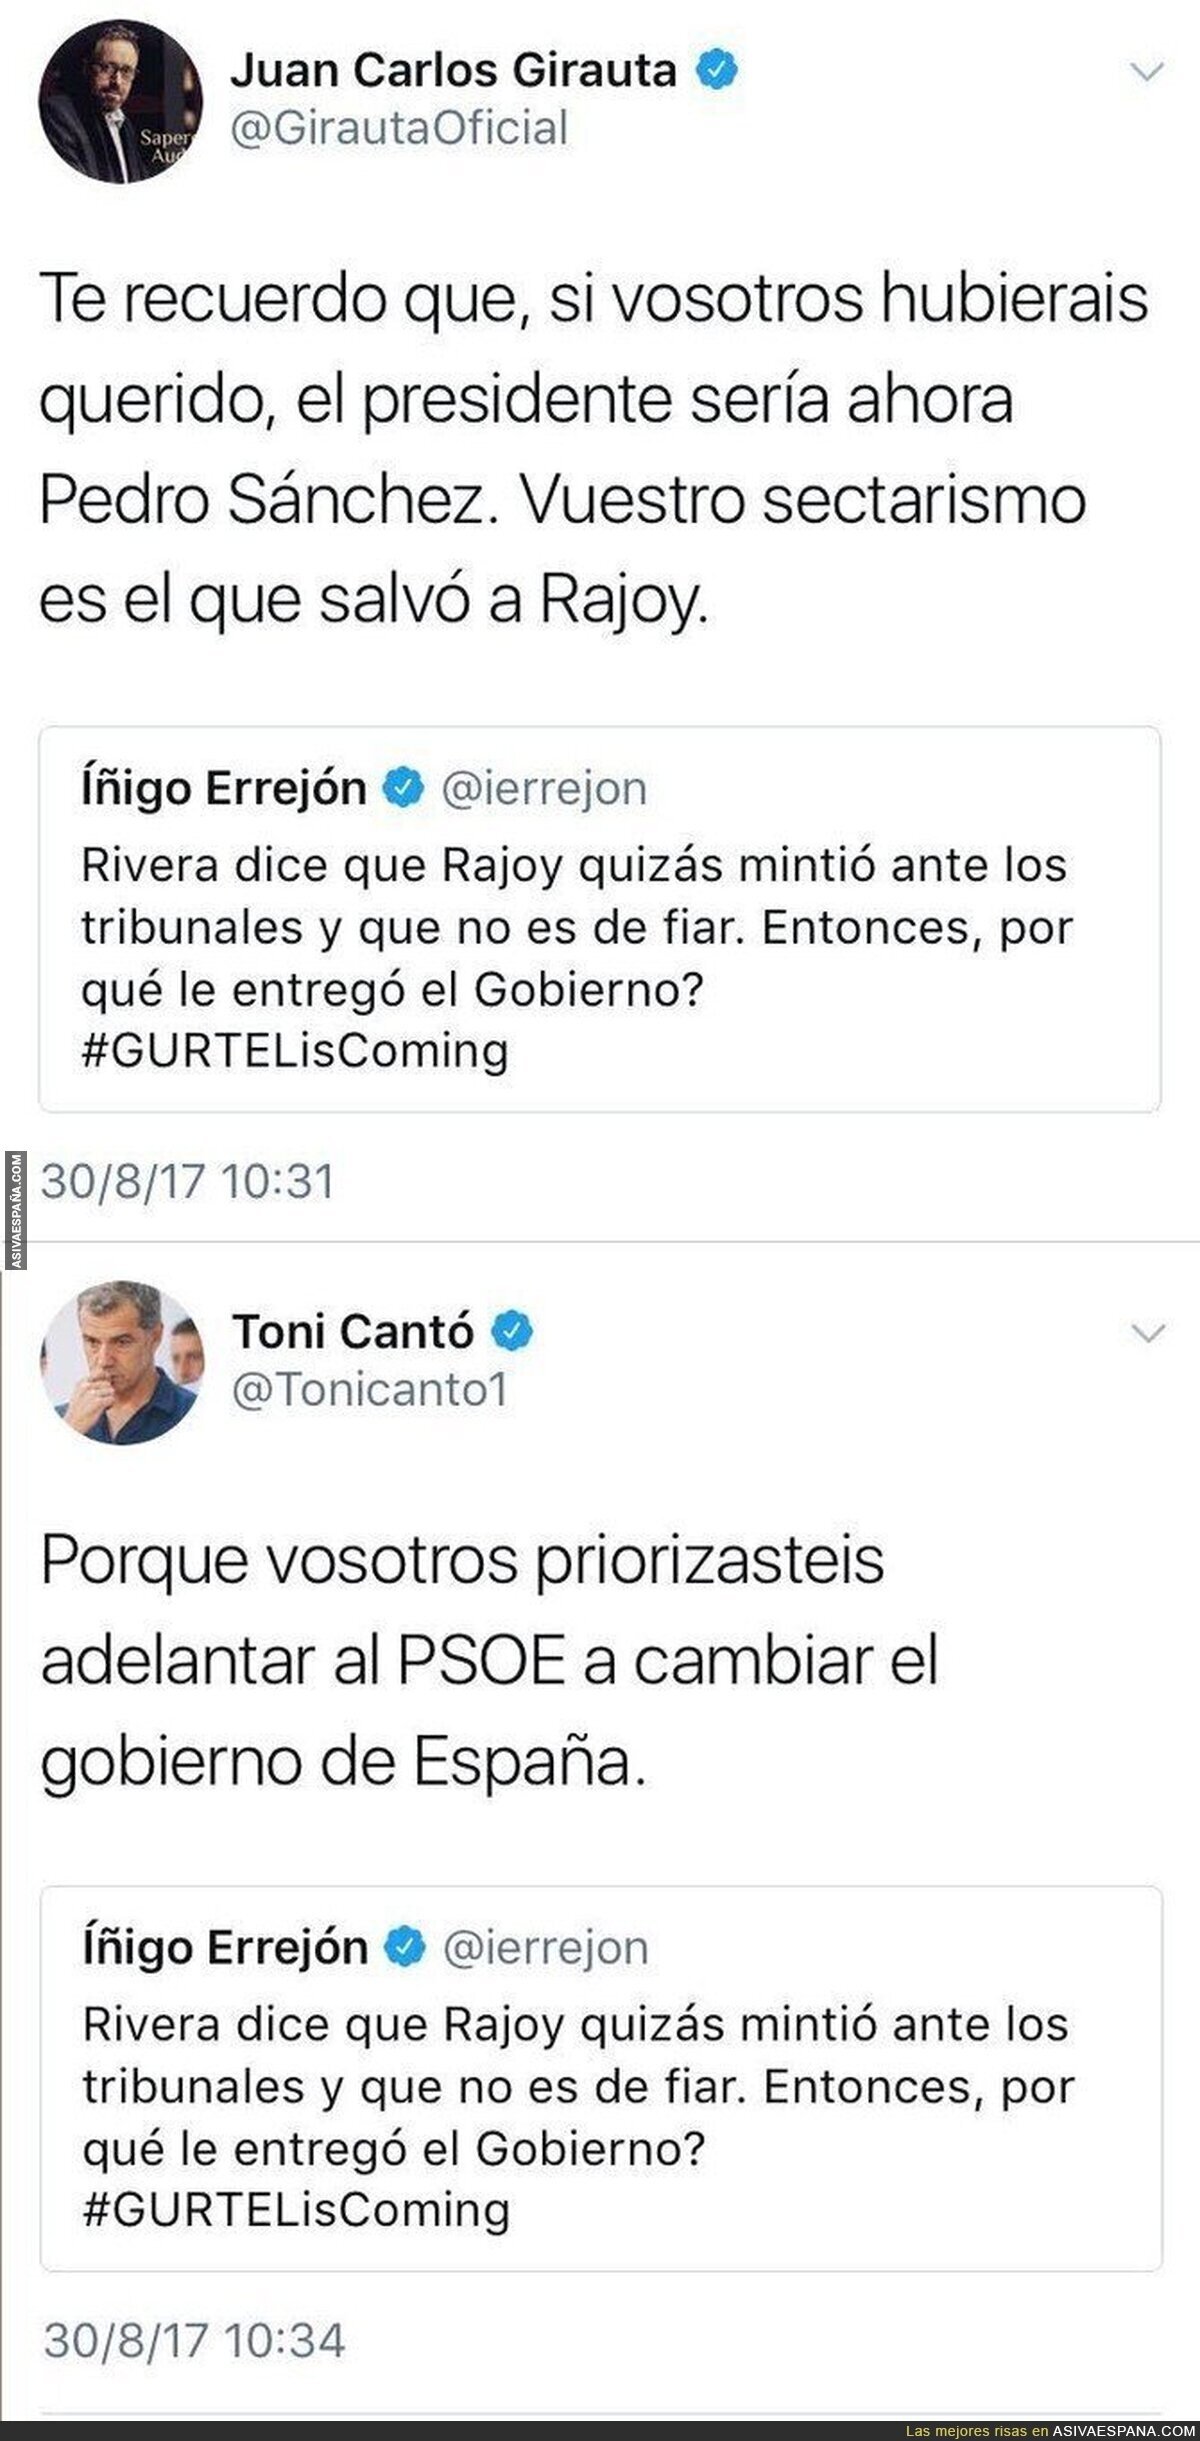 El doble ZASCA a Íñigo Errejón tras este tuit